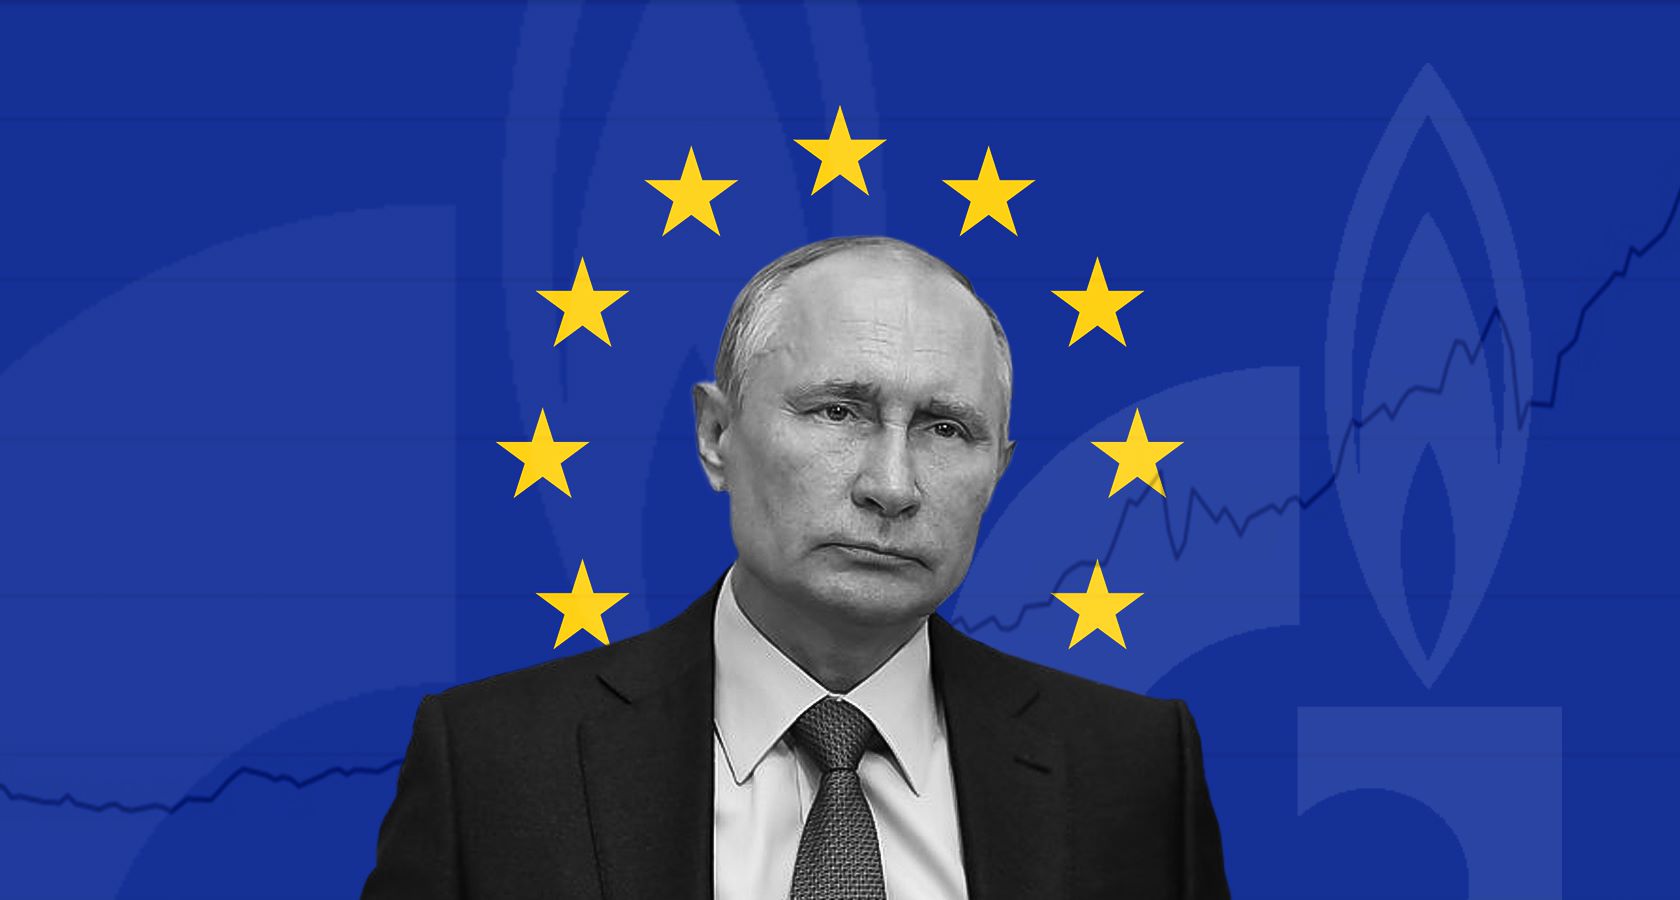 Схема на $10 млрд. Как Путин манипулирует рынком газа Европы ради Северного  потока-2 | Новости Украины | LIGA.net